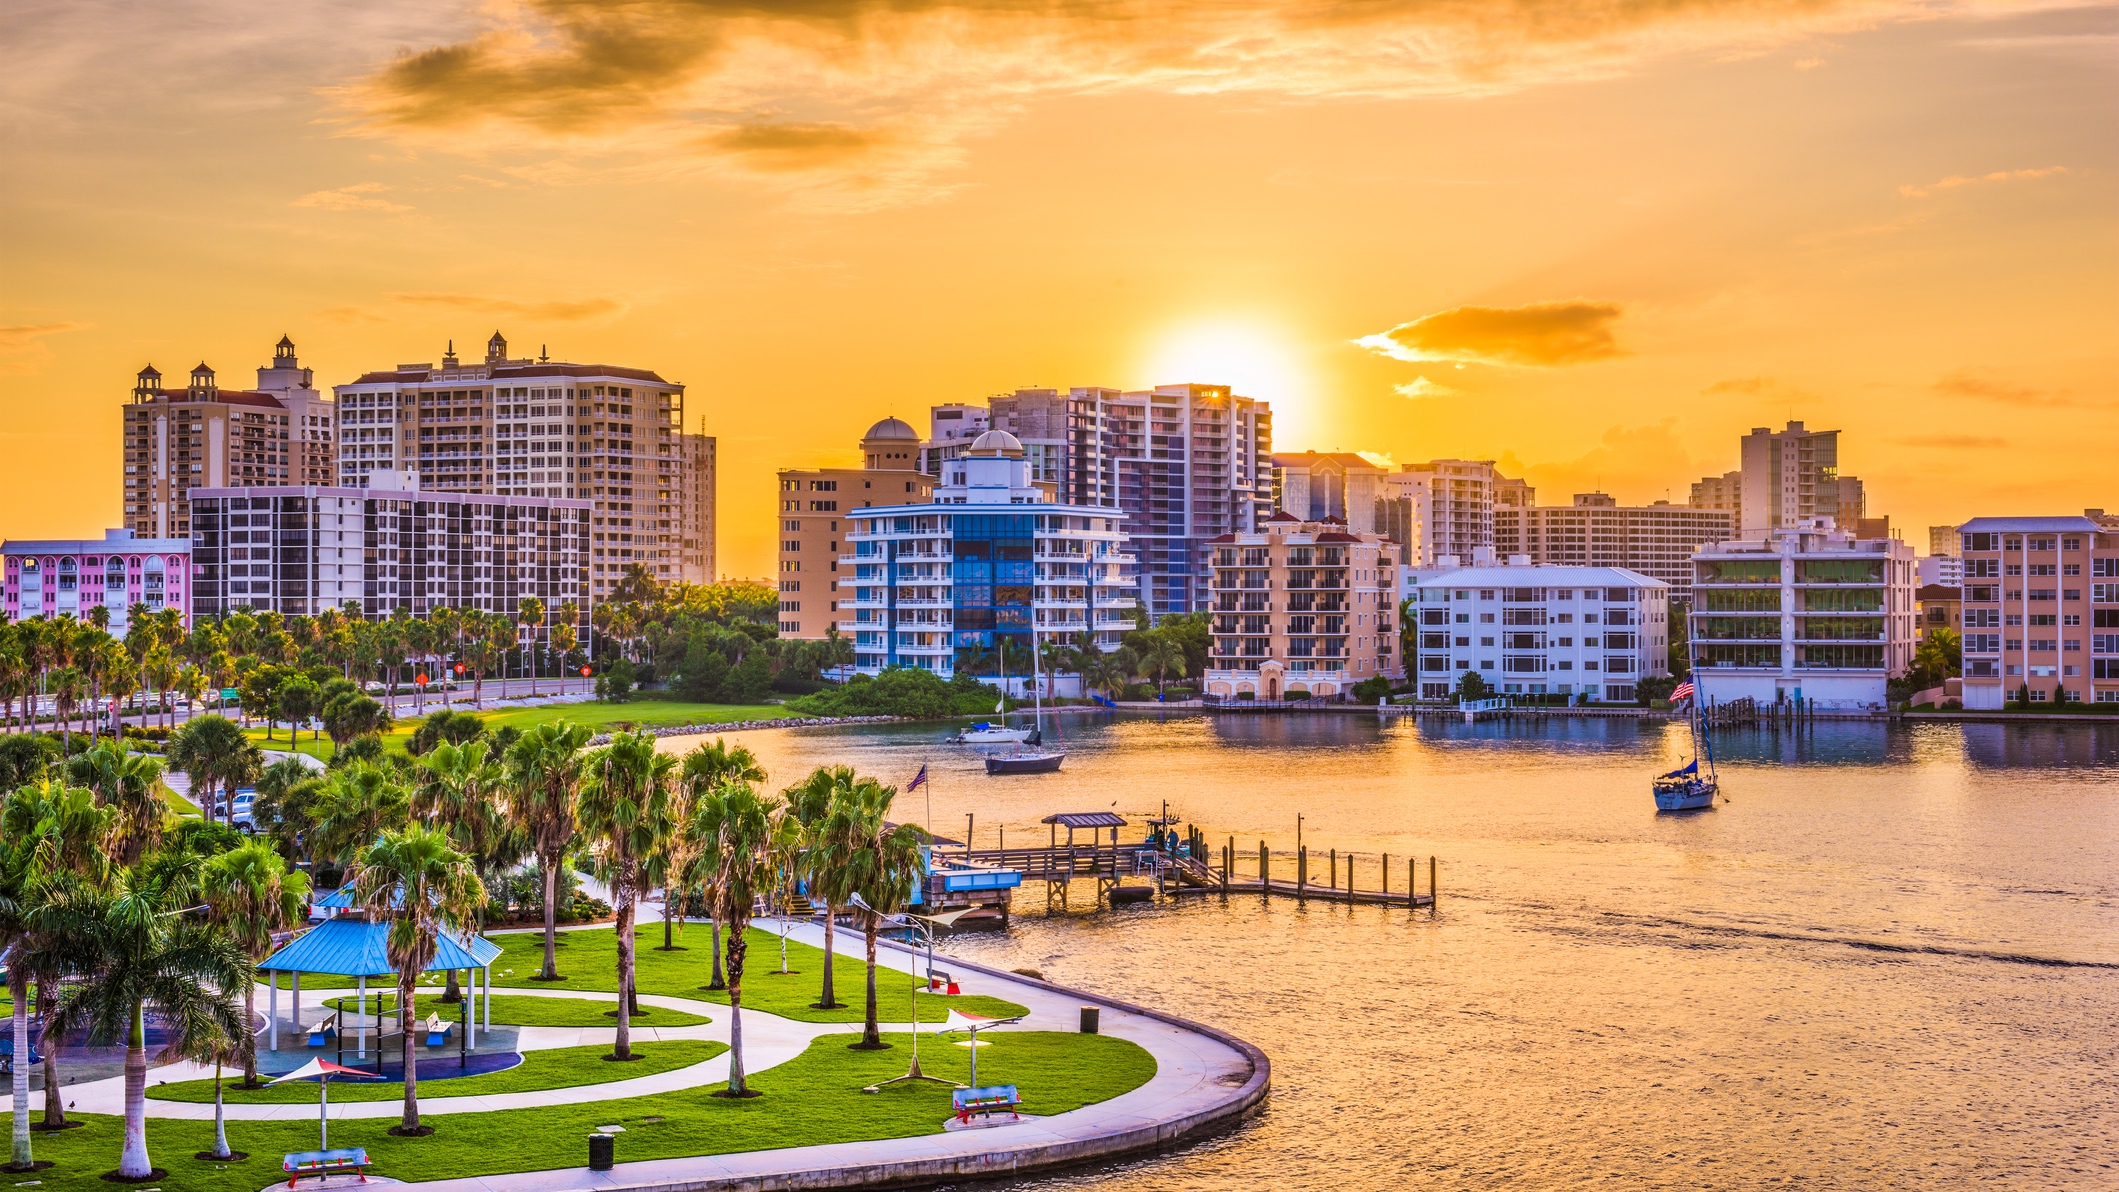 Downtown Sarasota, Florida waterfront